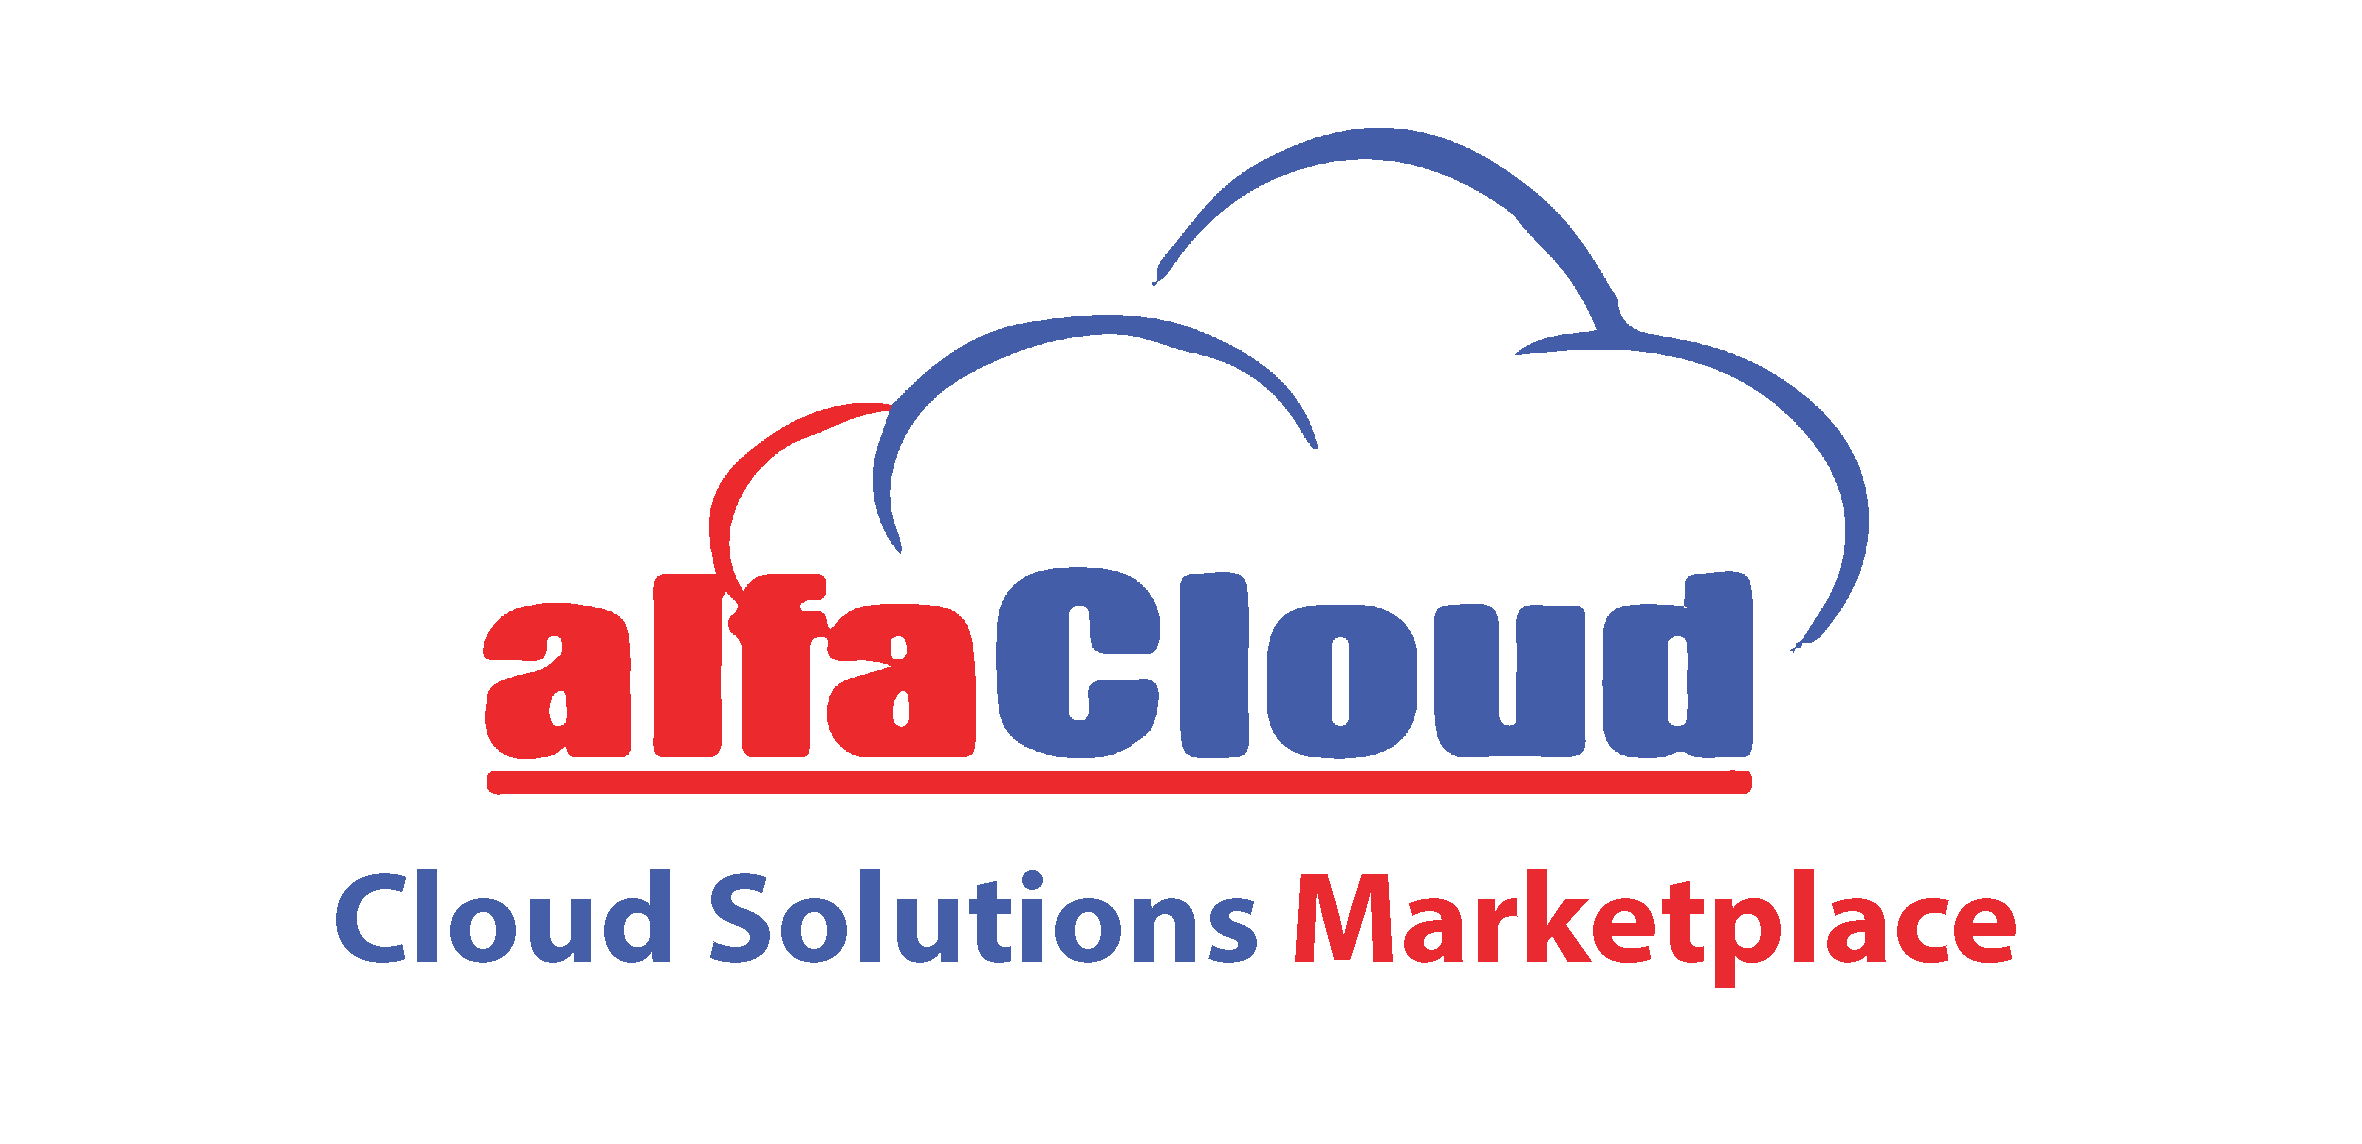 Alfa Cloud 企業雲軟件解決方案平台